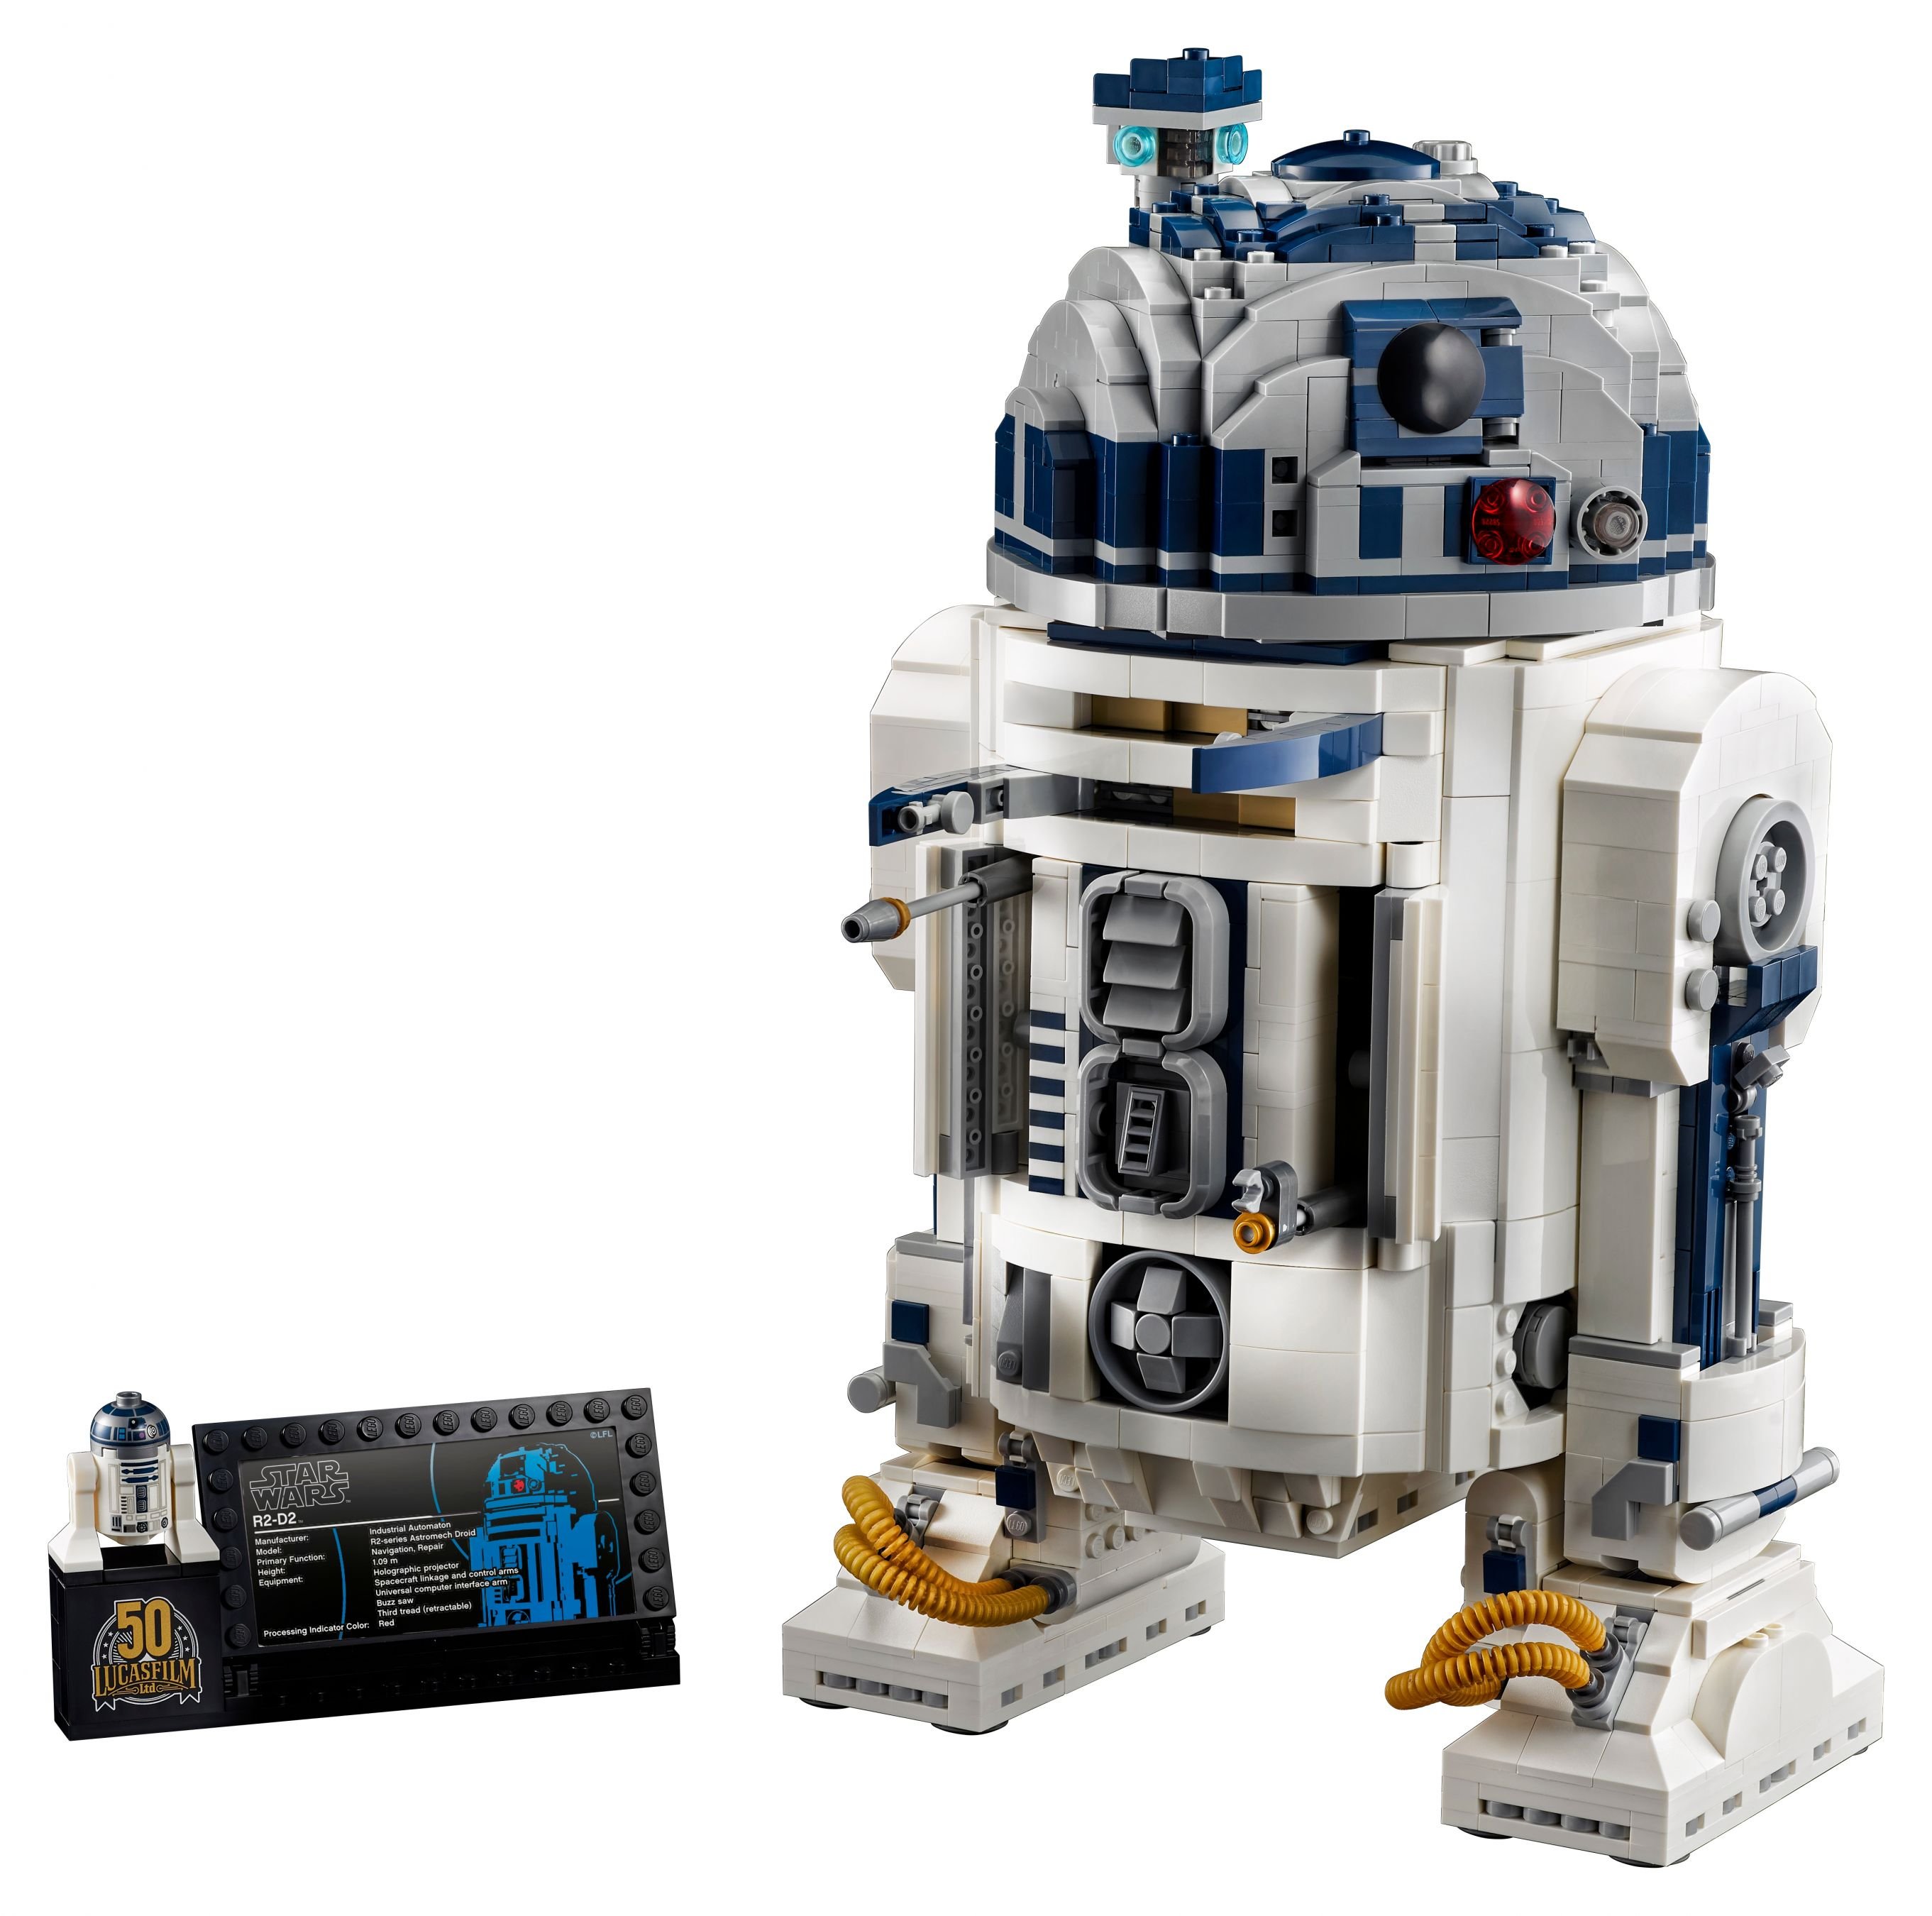 LEGO Star Wars 75308 R2-D2™ LEGO_75308_alt2.jpg